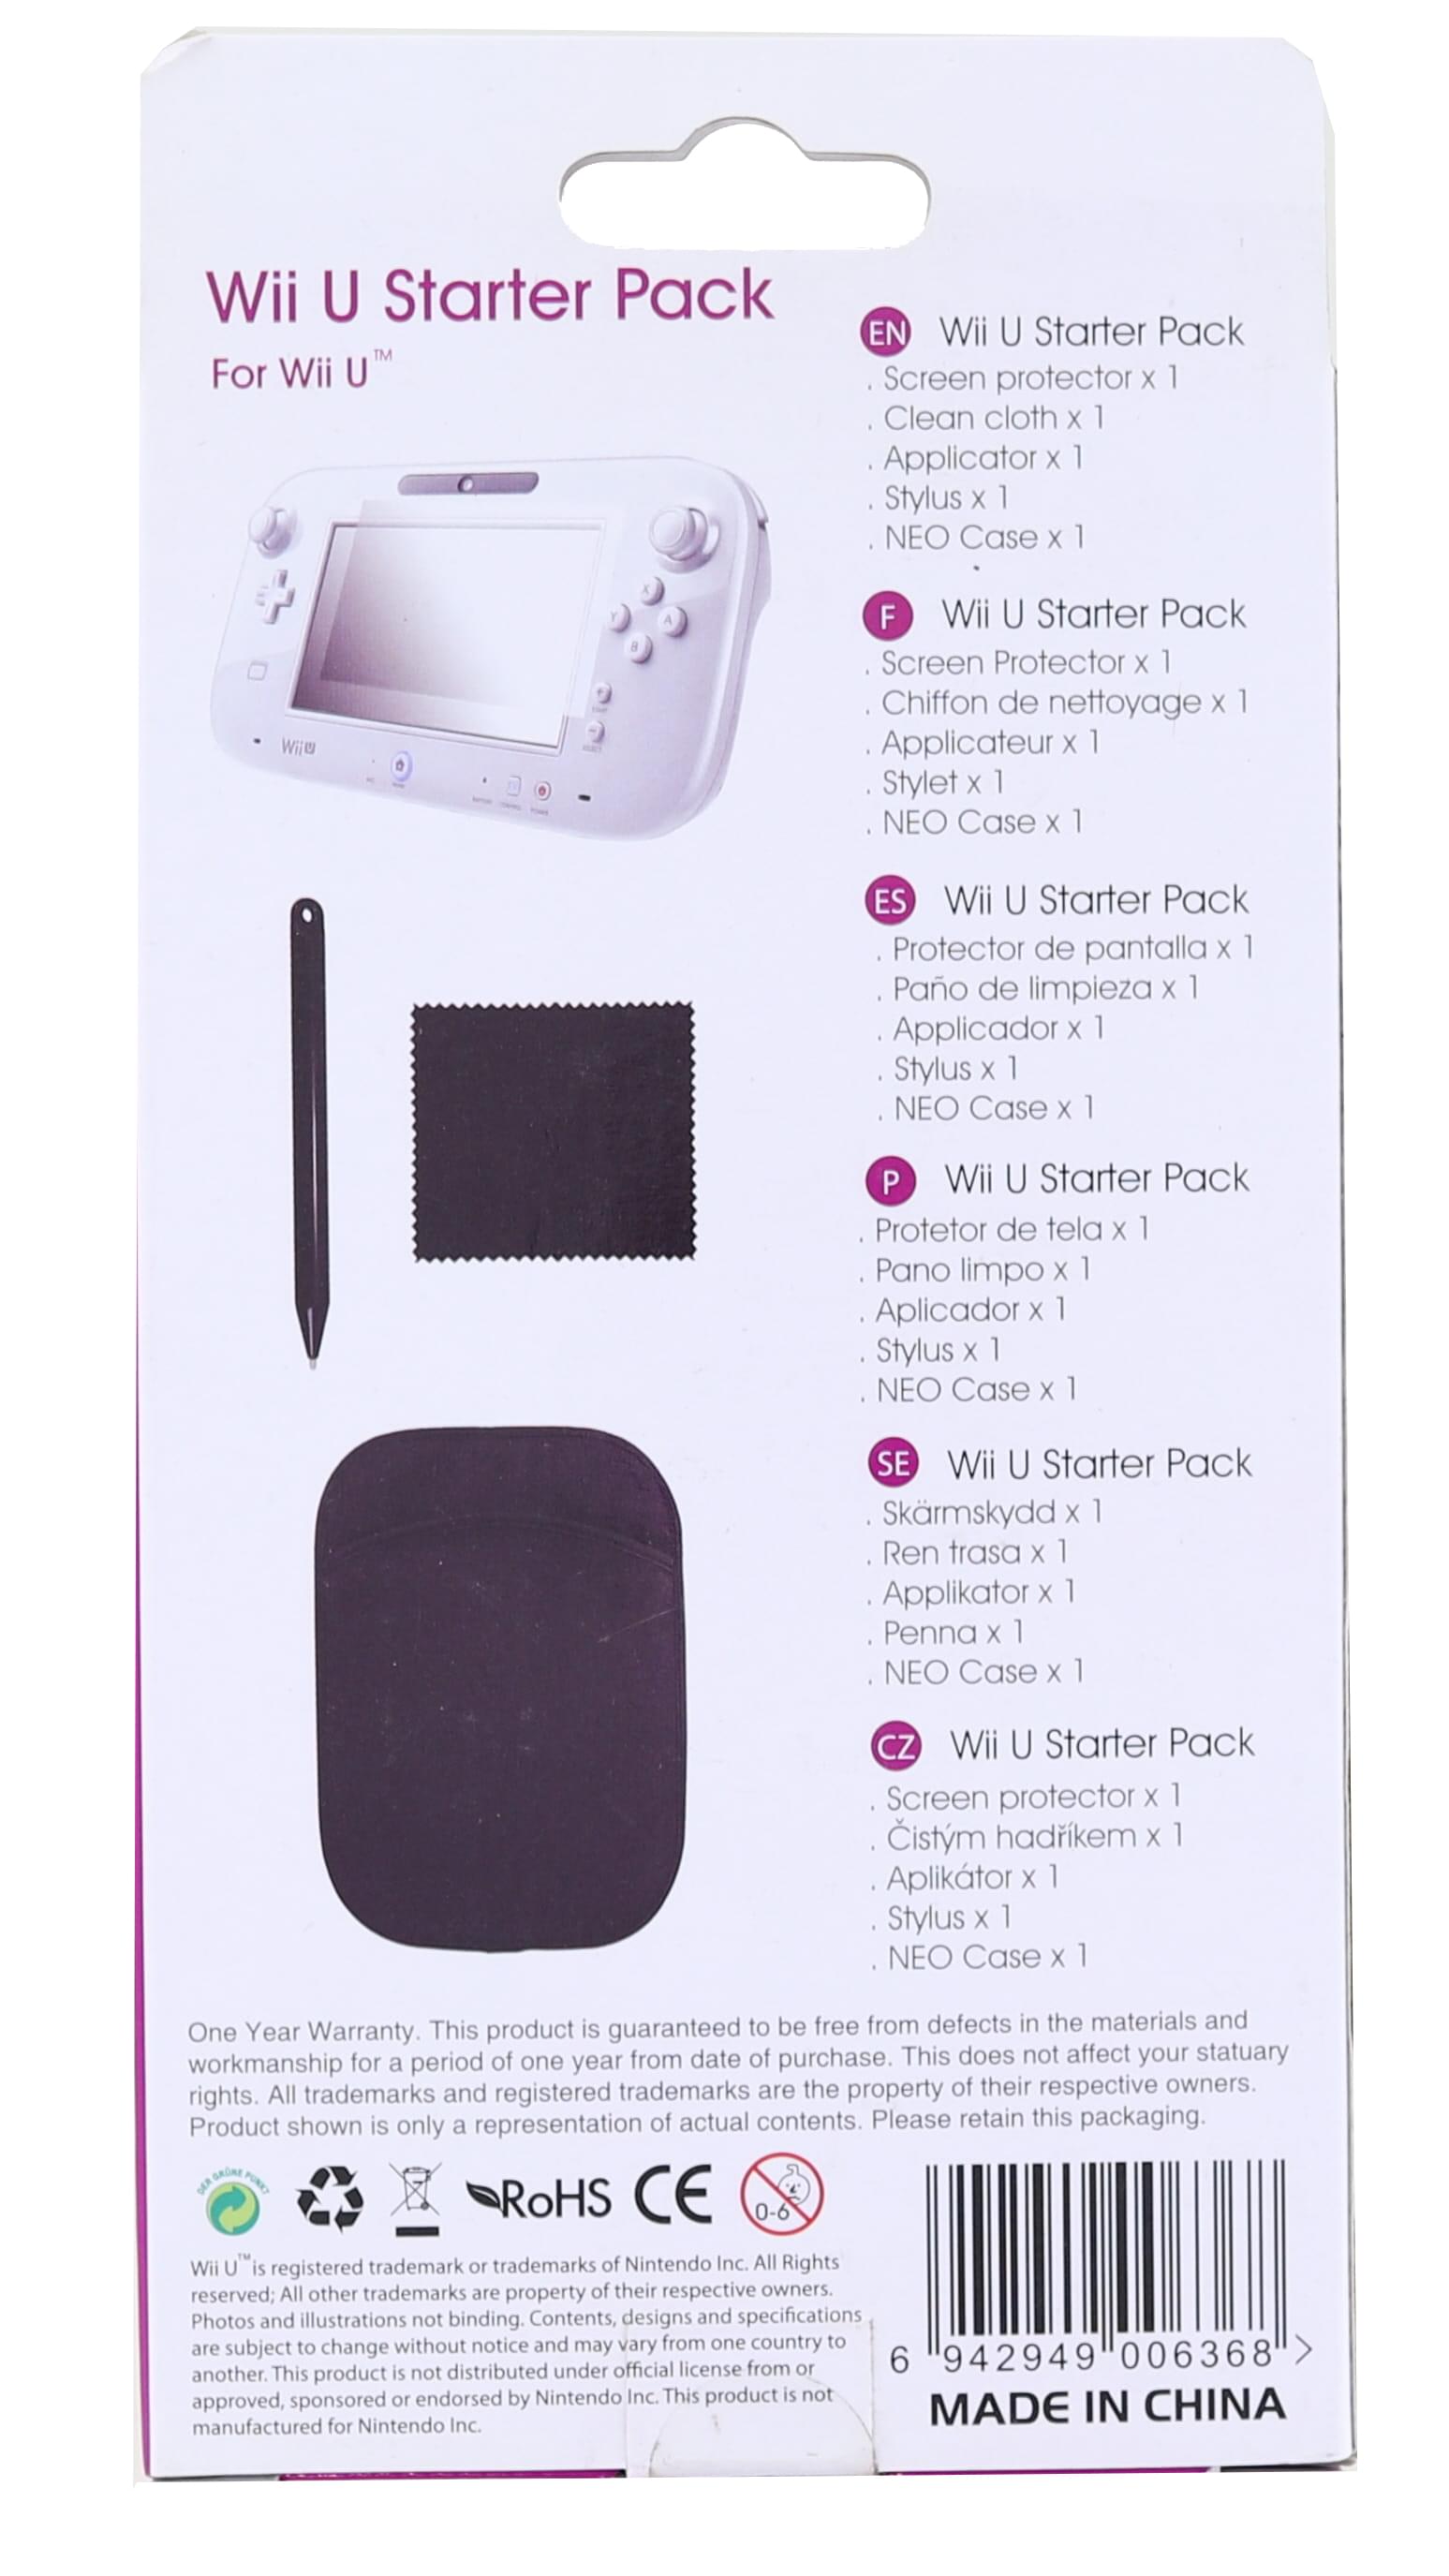 Gameware Wii U Starter Pack